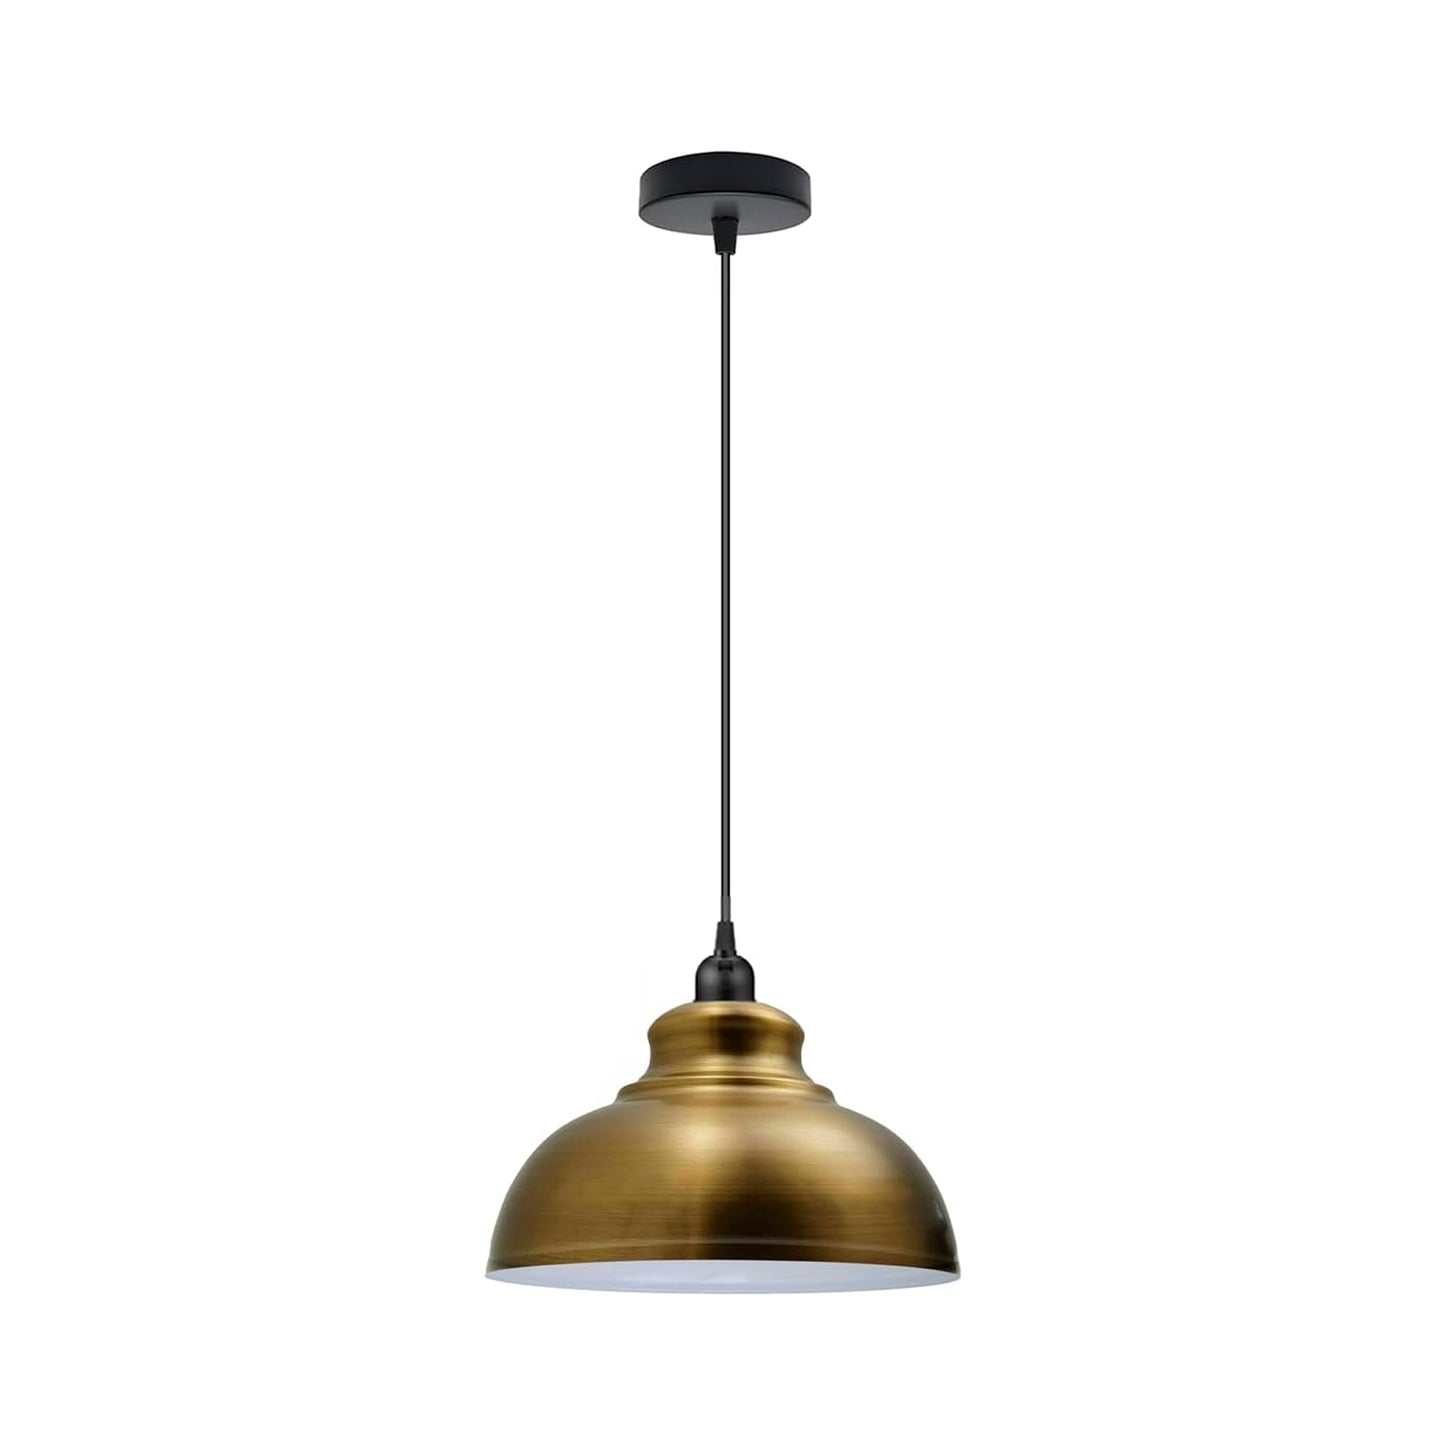  Metal Lampshade Ceiling Lamp